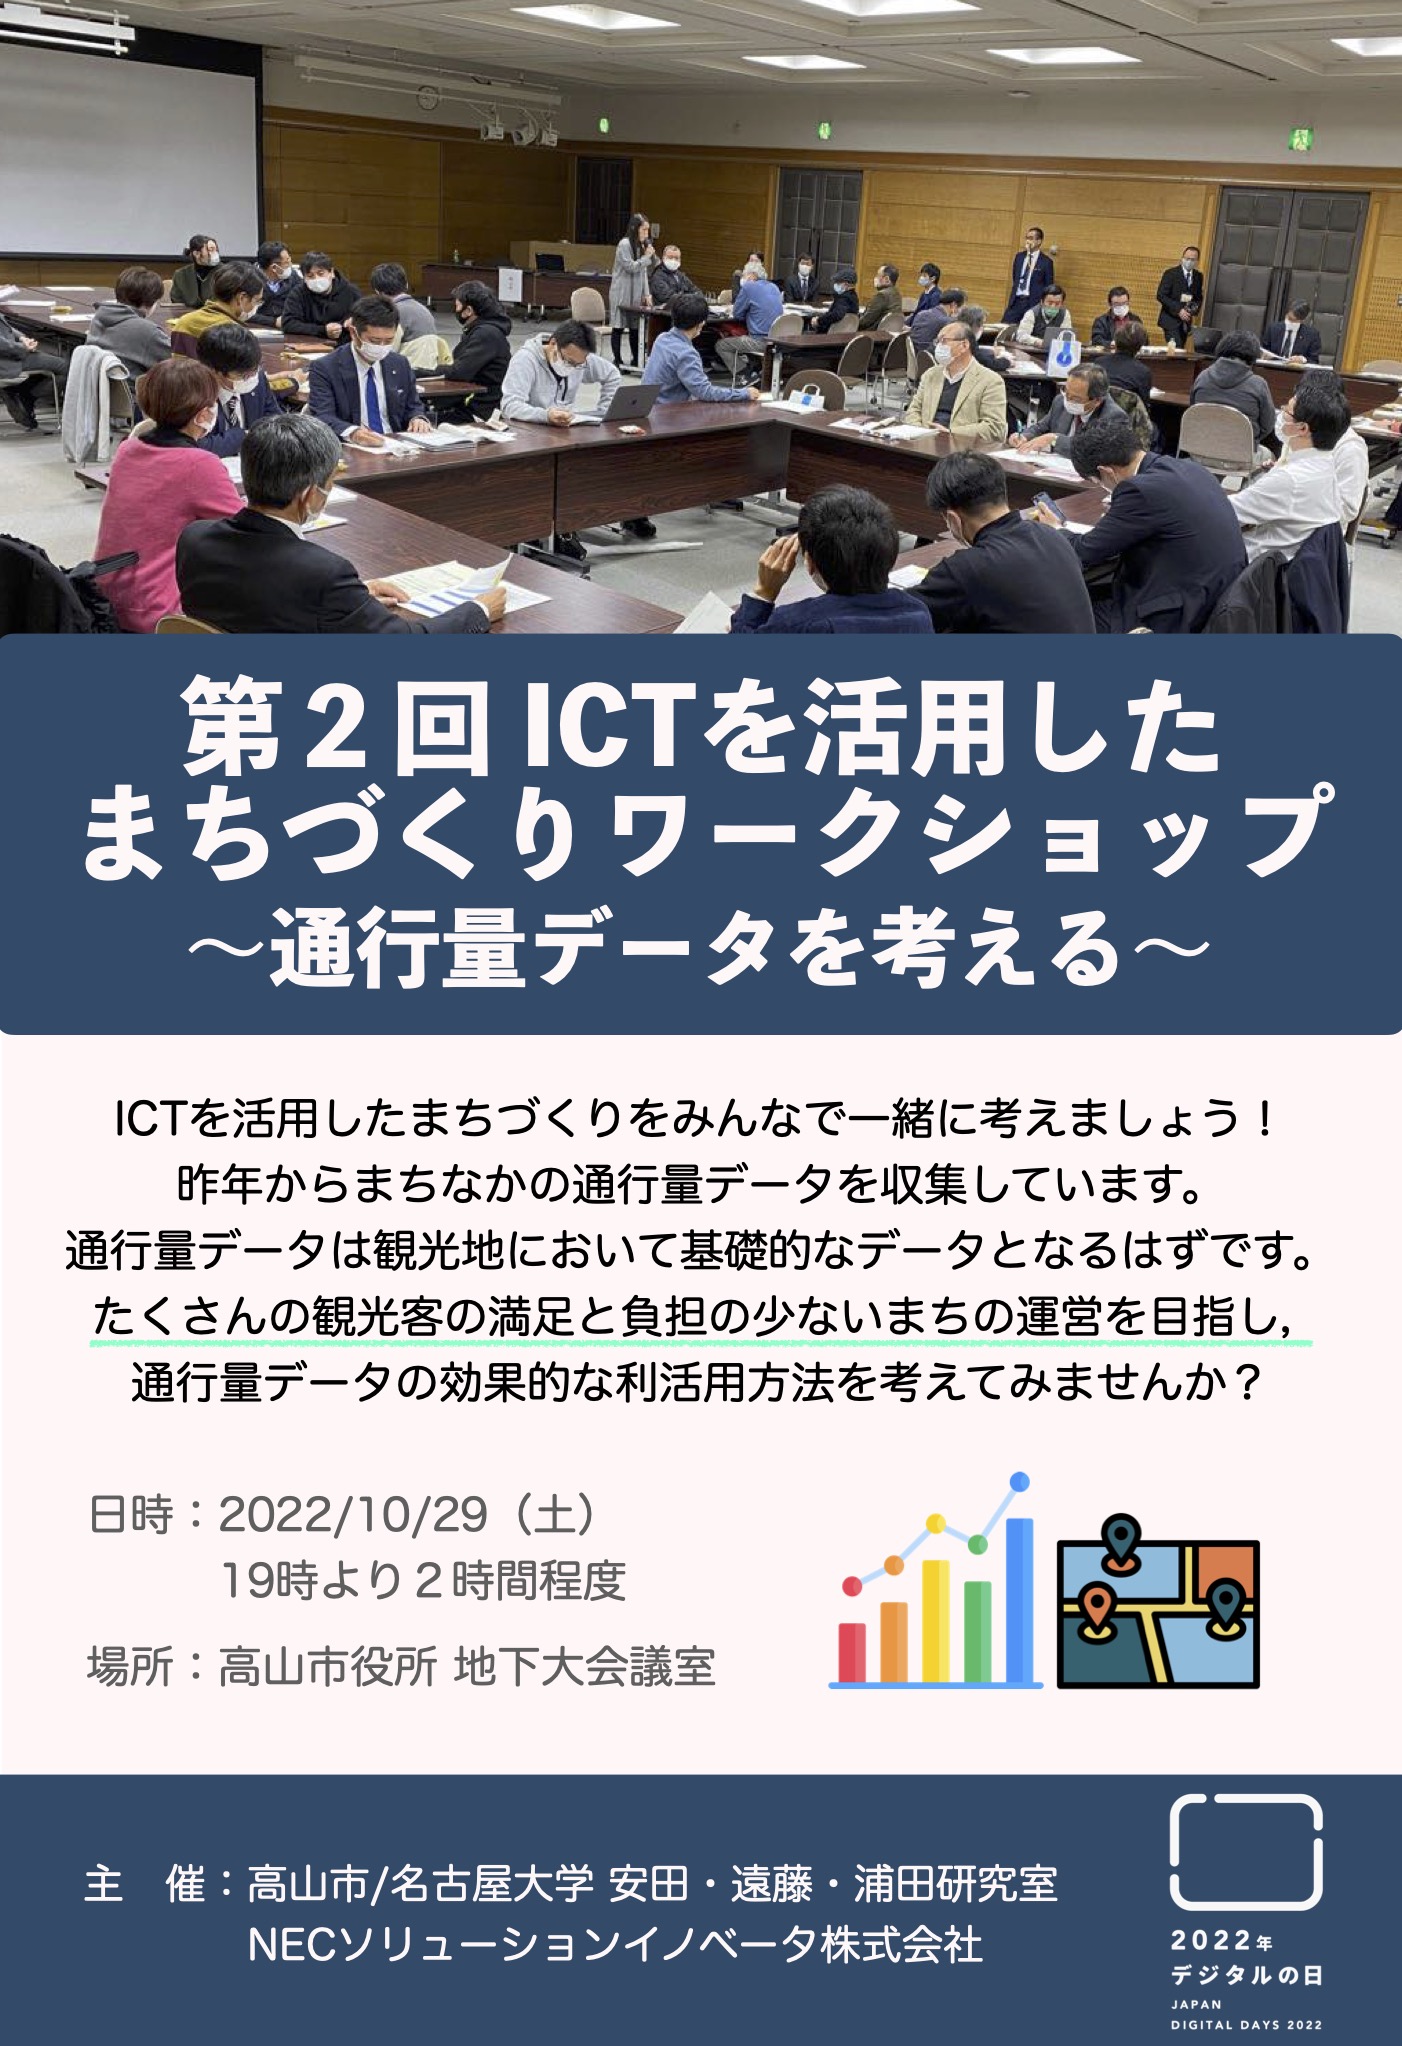 高山市で「第２回ICTを活用したまちづくりワークショップ」を開催します。